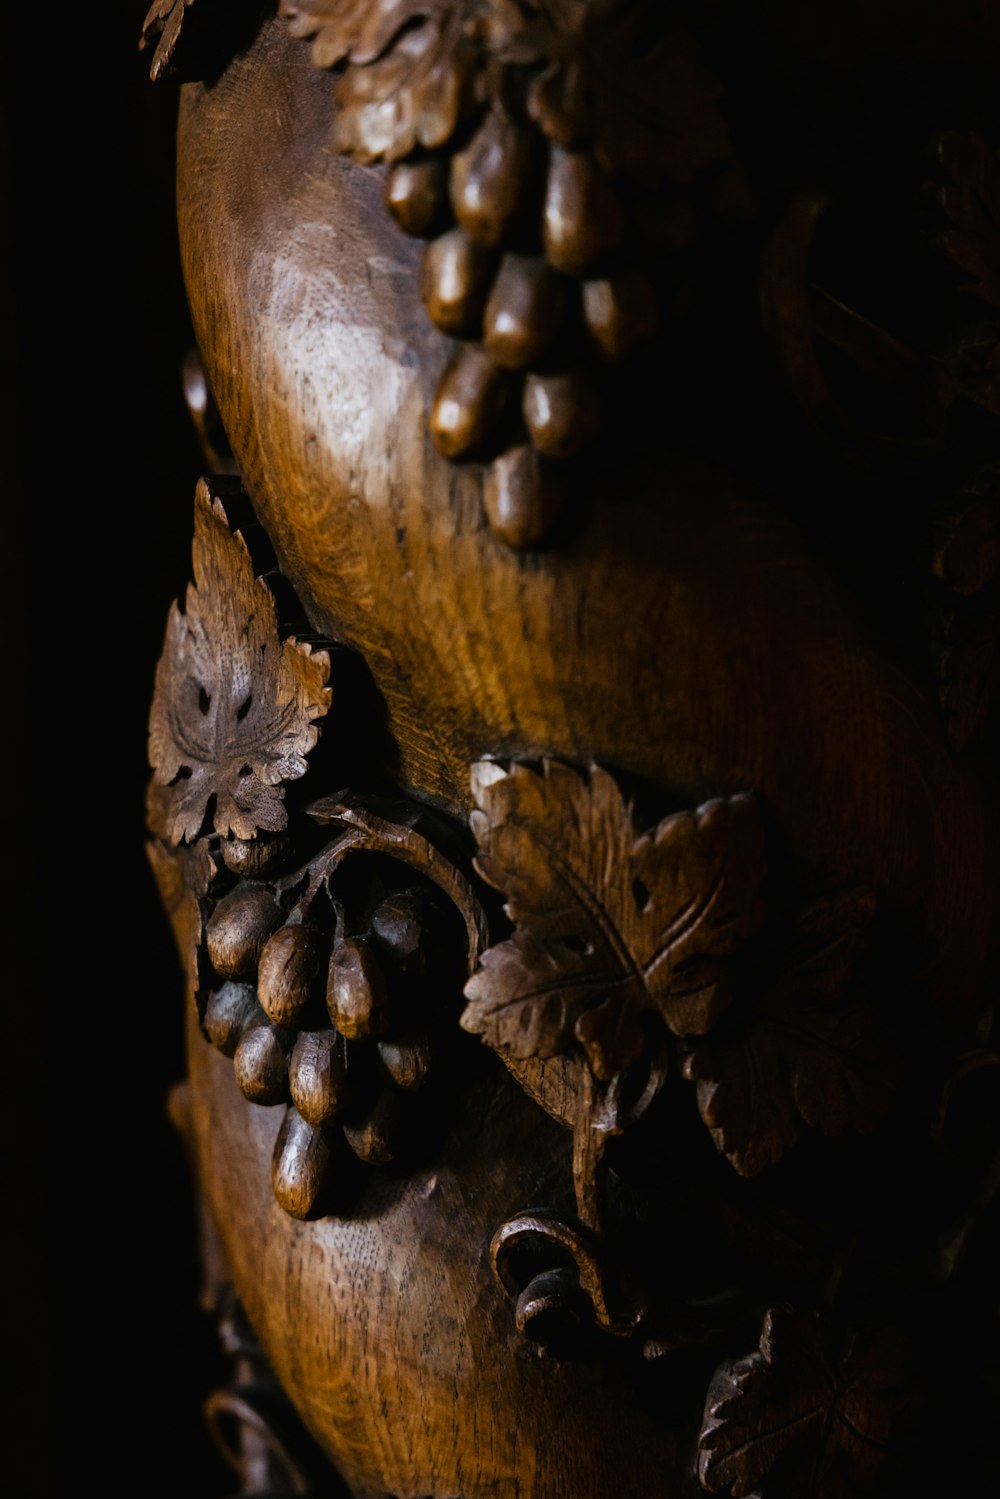 a close-up of a skull